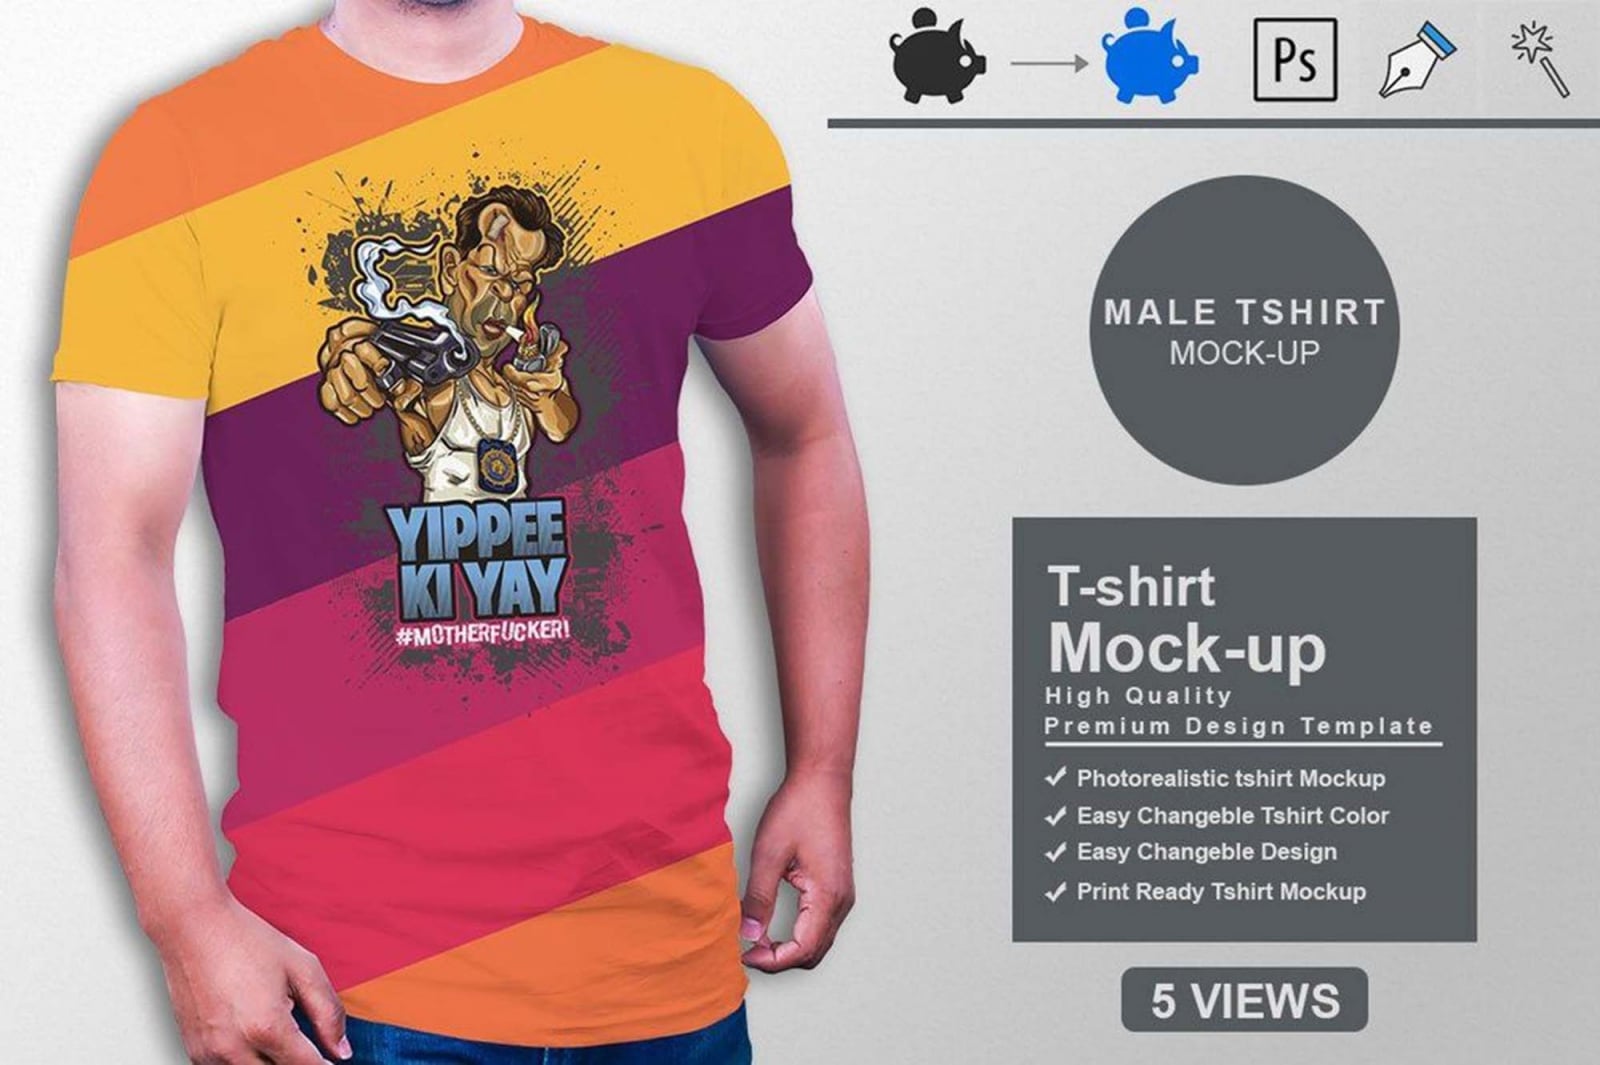 Men T-shirt Mockup in PSD Download For Free | DesignHooks